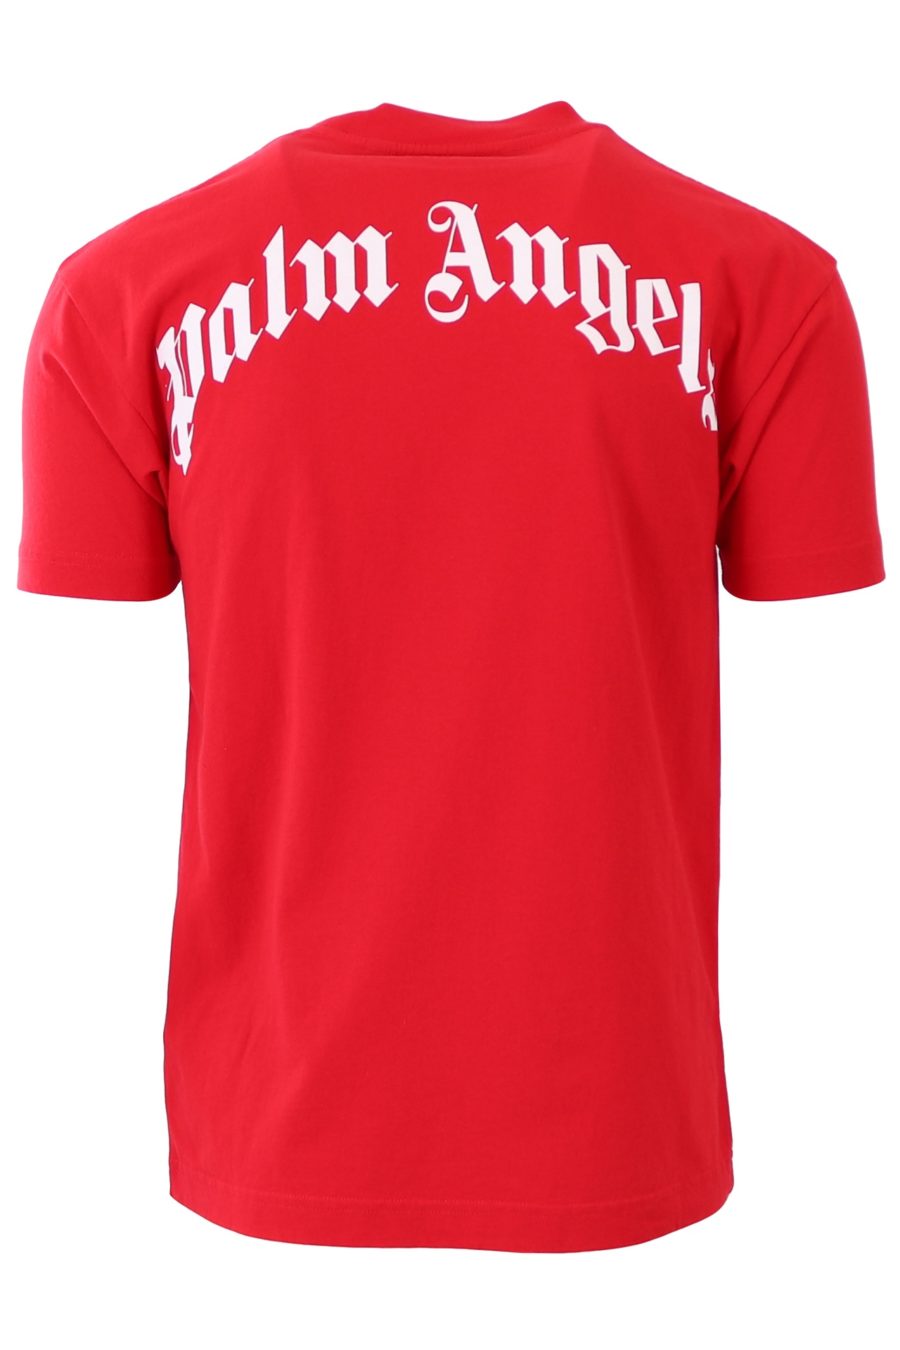 Palm Angels - Camiseta Palm Angels vermelha com urso - Moda BLS